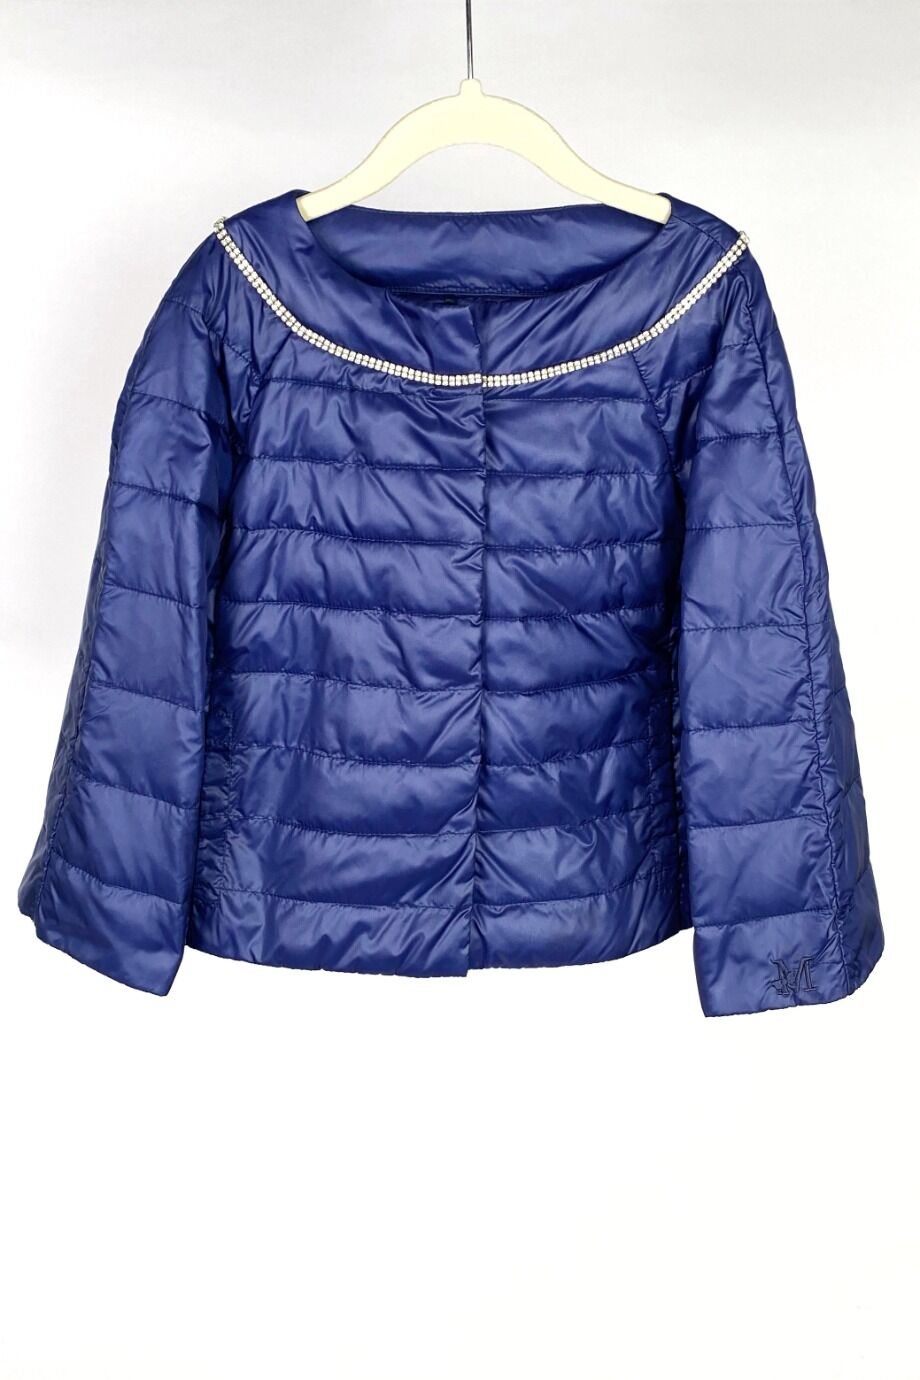 image 1 Детская куртка синего цвета c декором